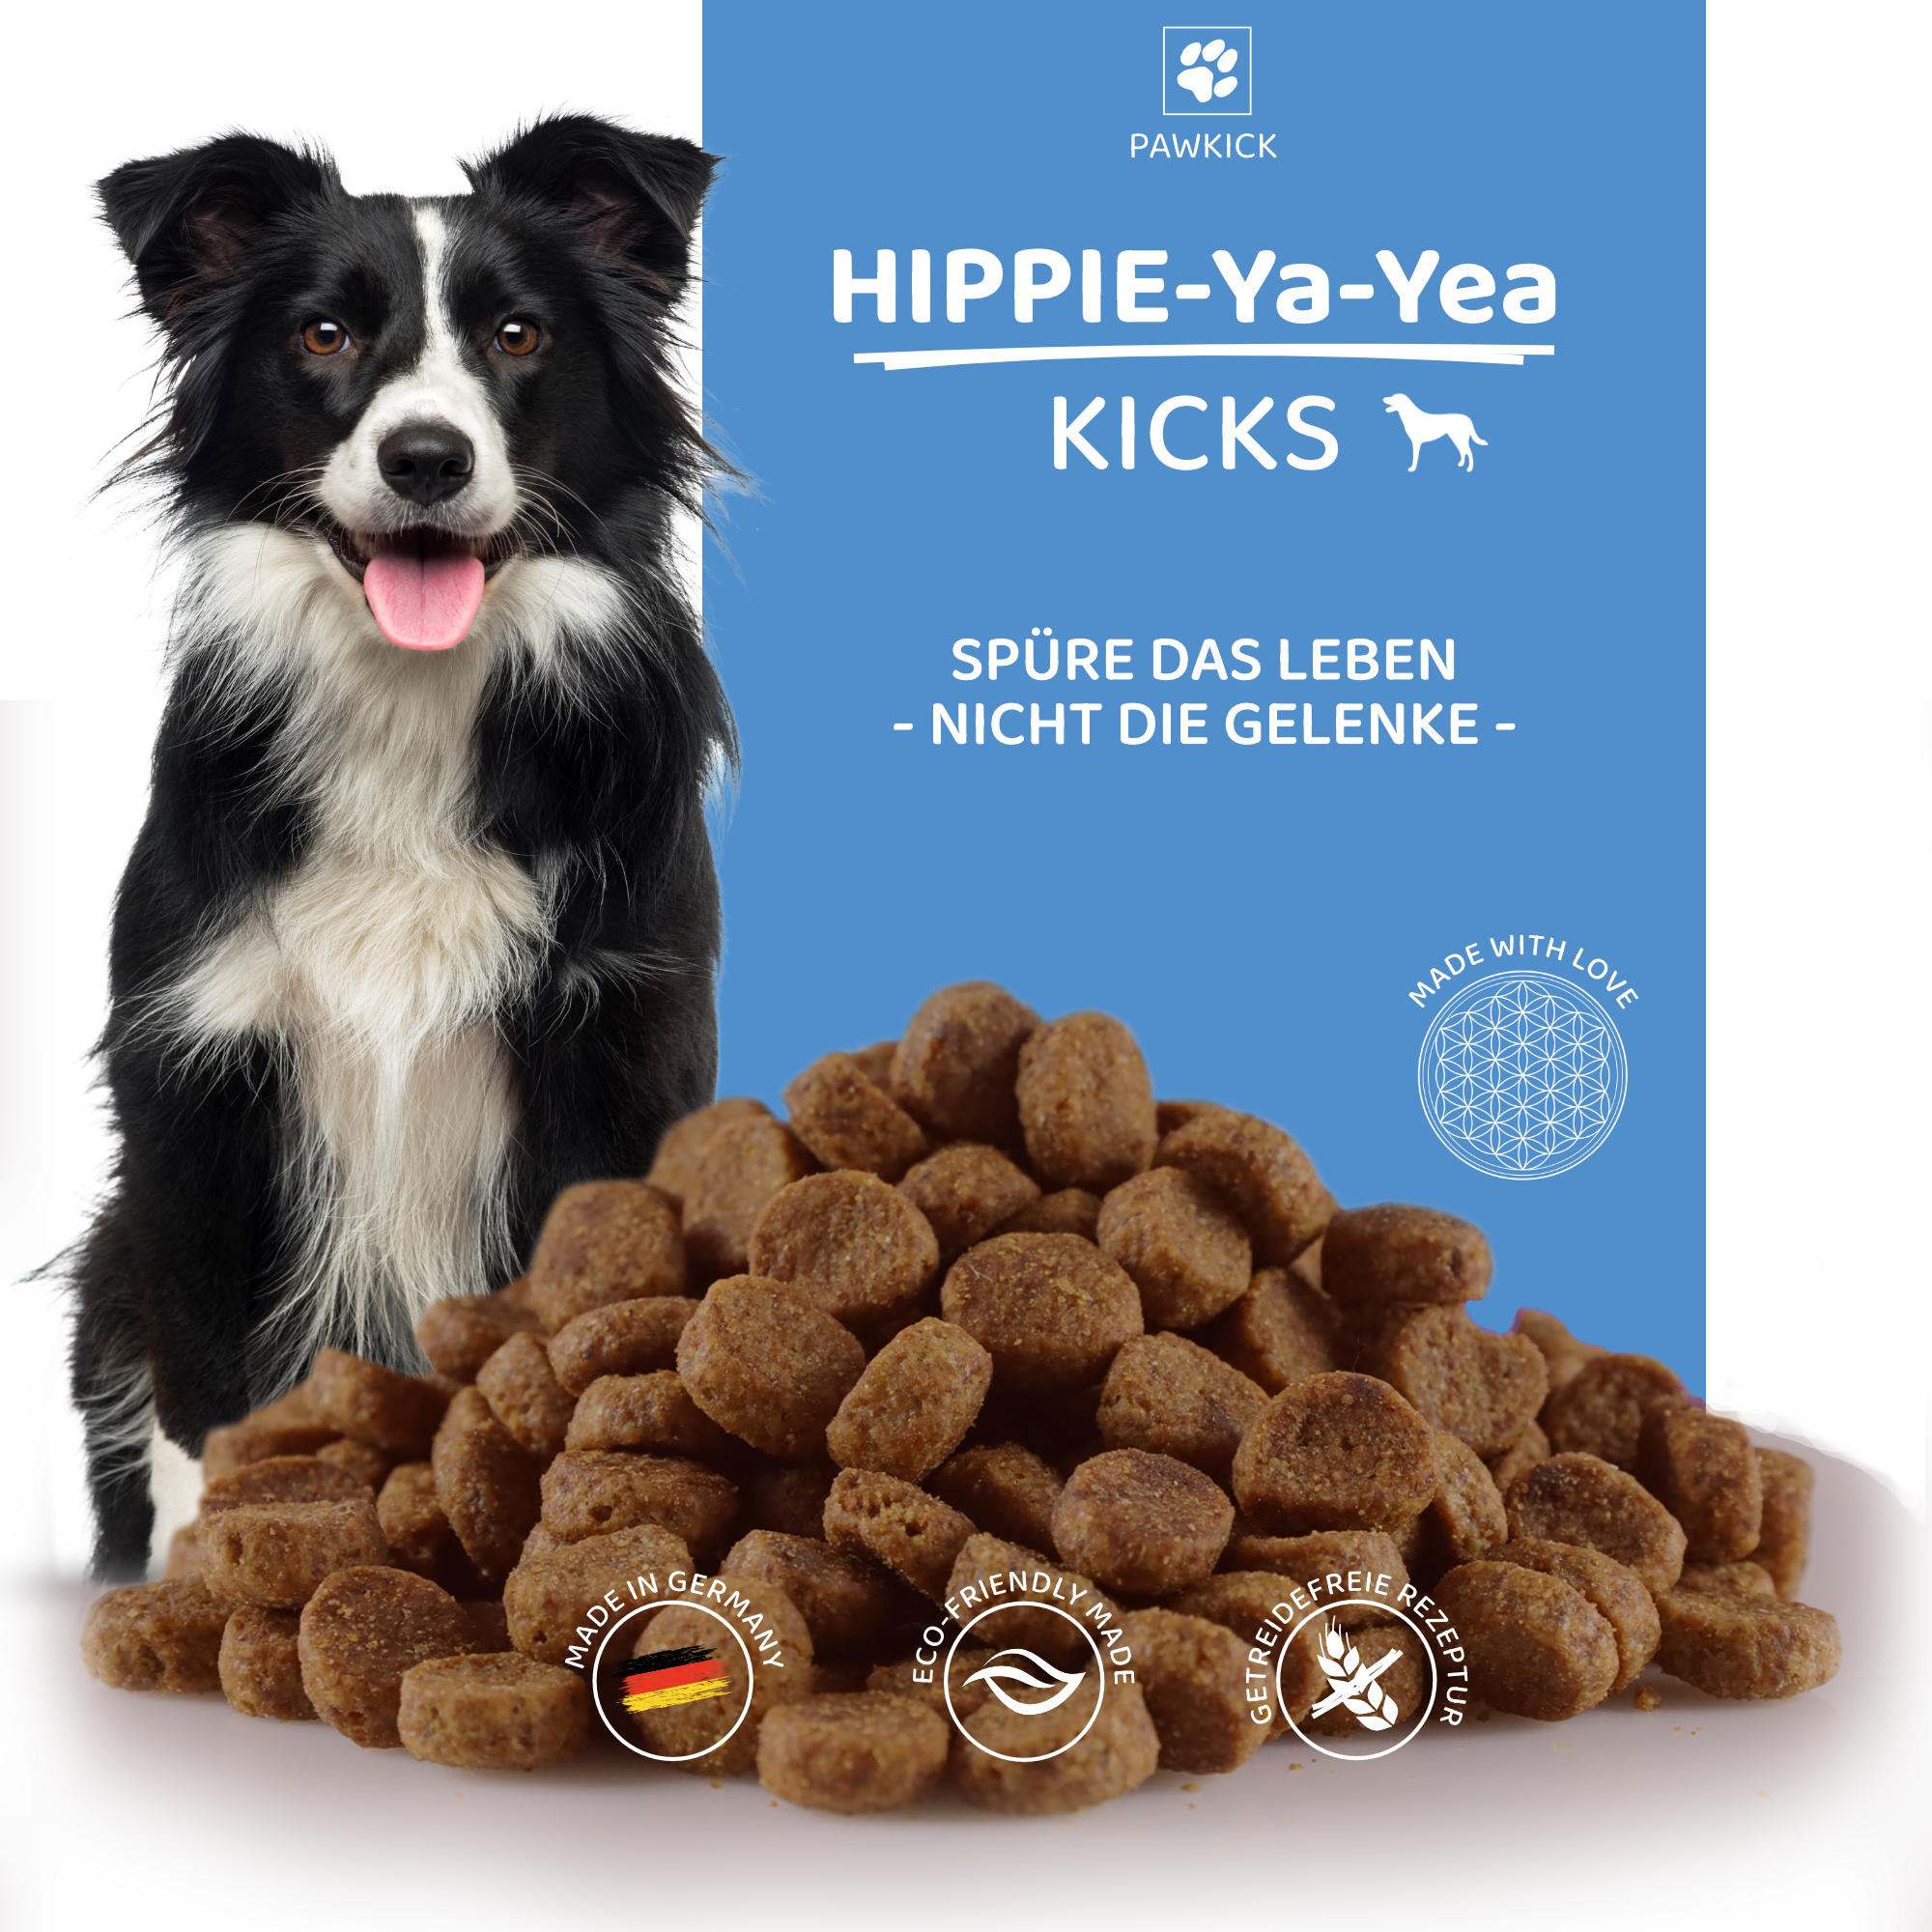 HIPPIE-Ya-YEA KICKS DOG